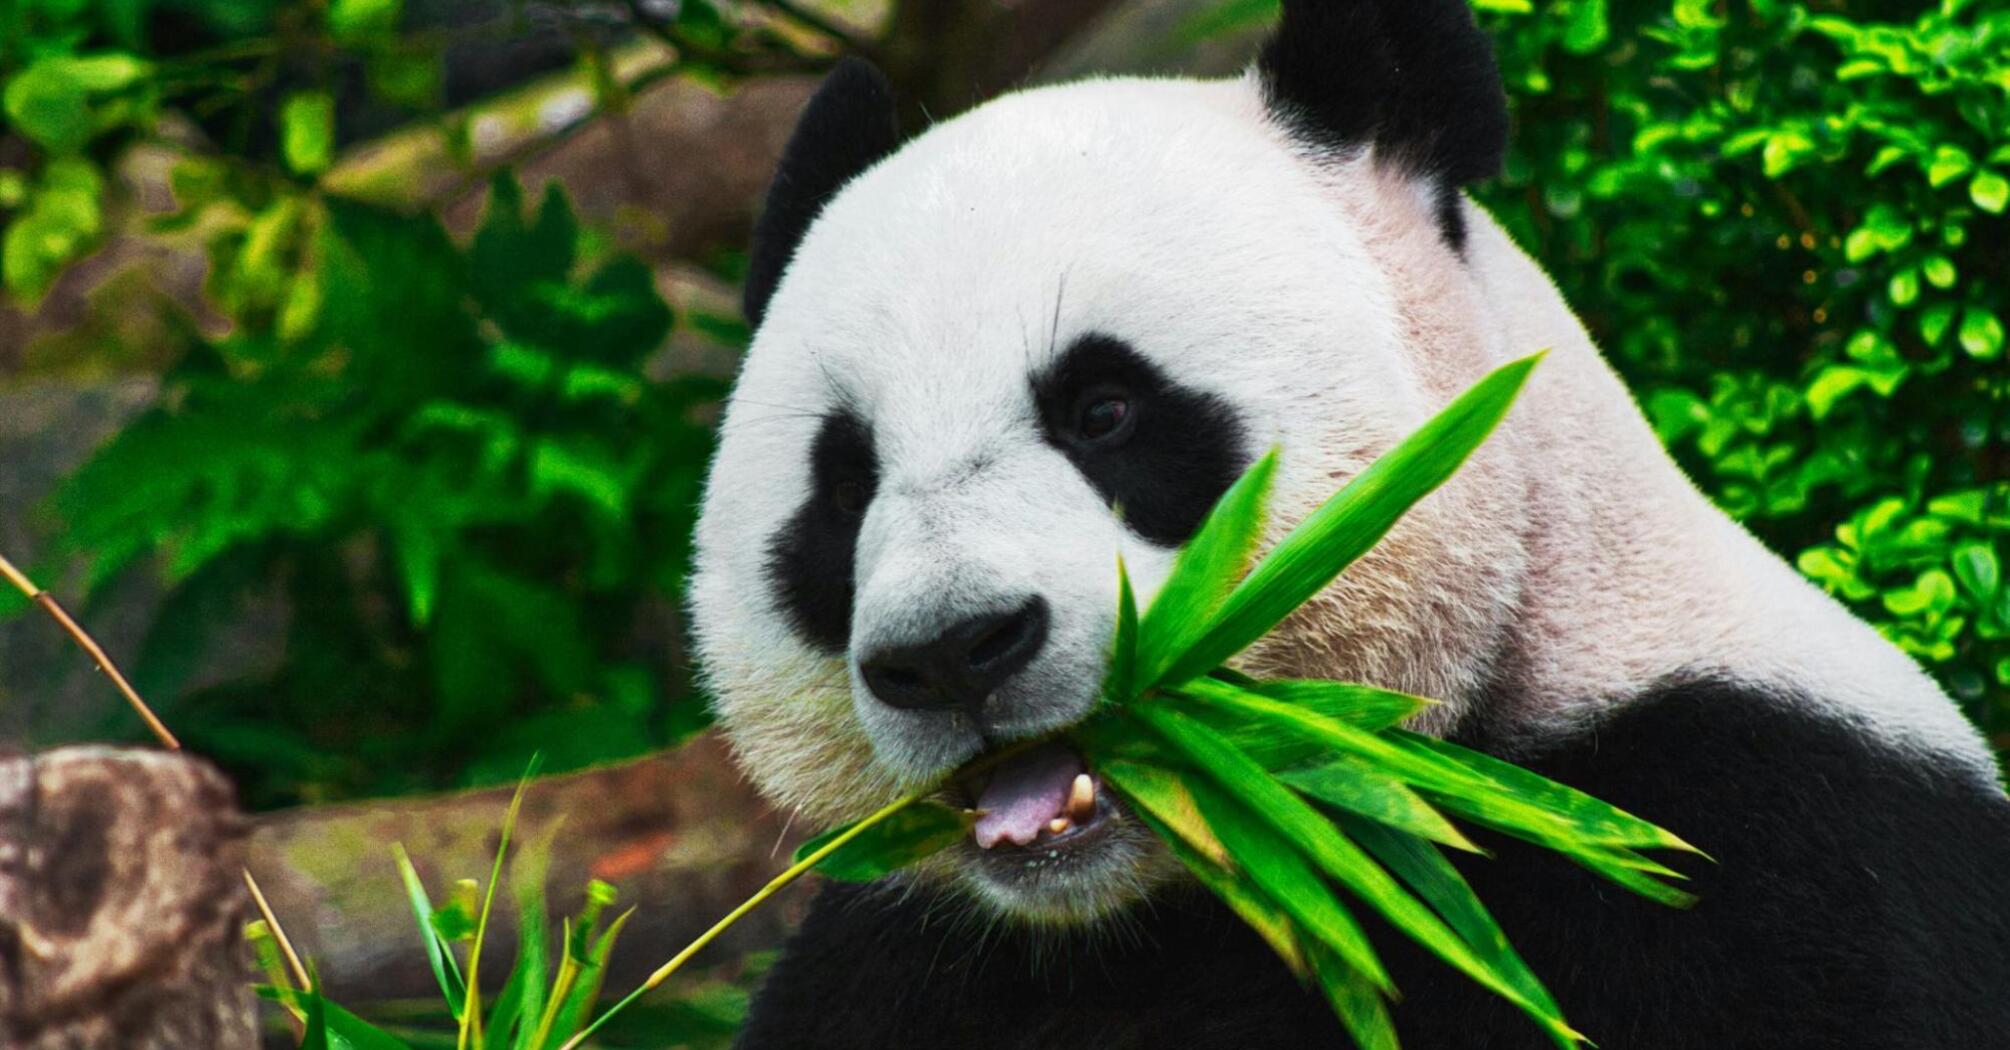 Panda eating bamboo leave